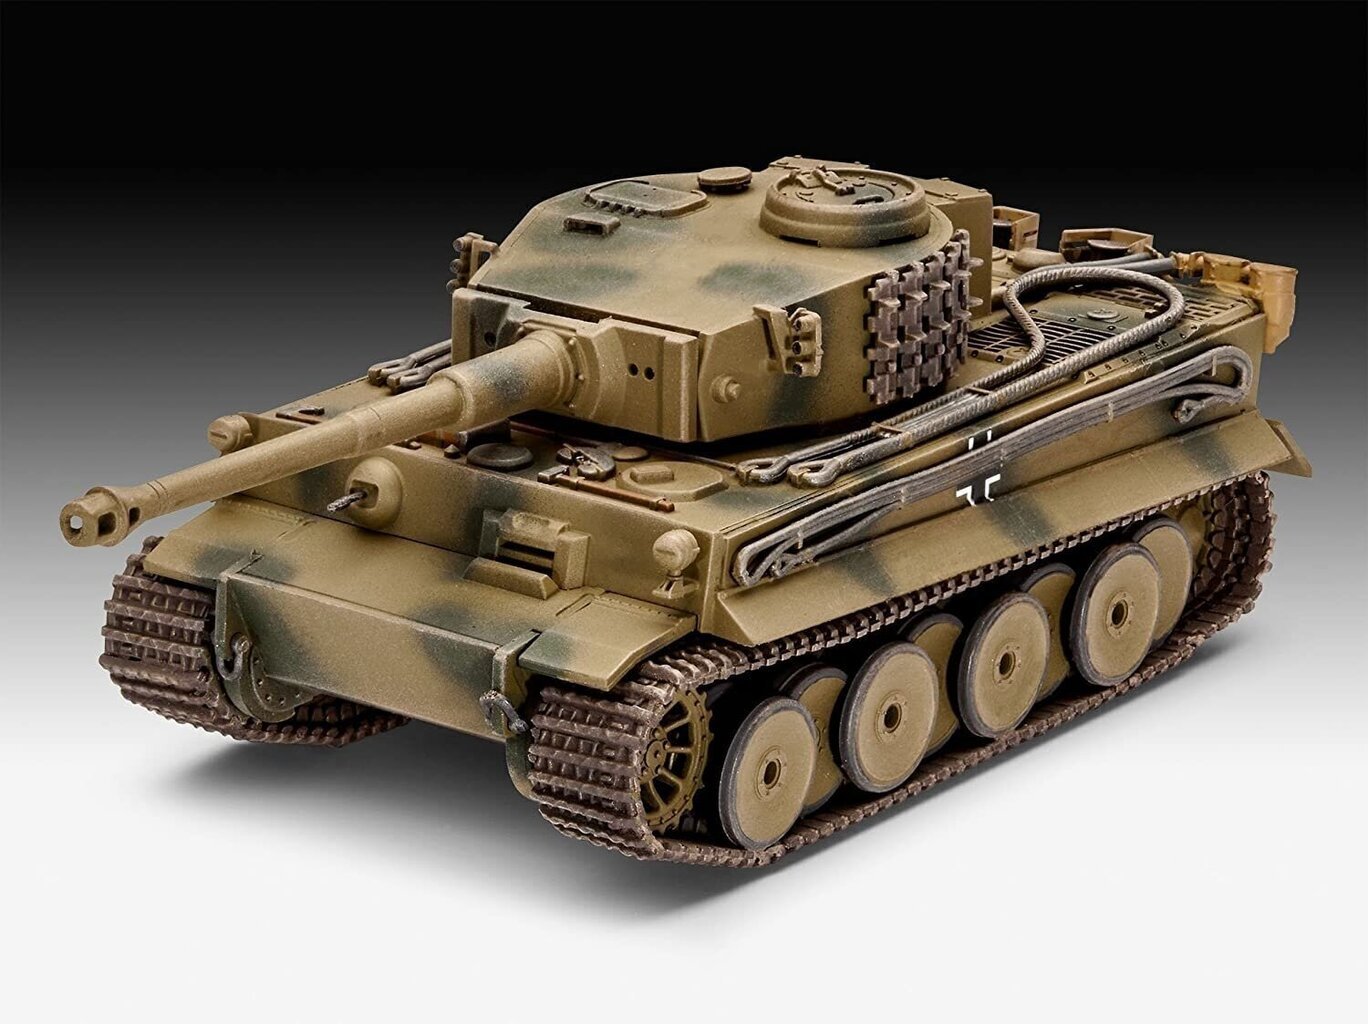 Revell - PzKpfw VI Ausf. H Tiger, 1/72 03262 cena un informācija | Konstruktori | 220.lv